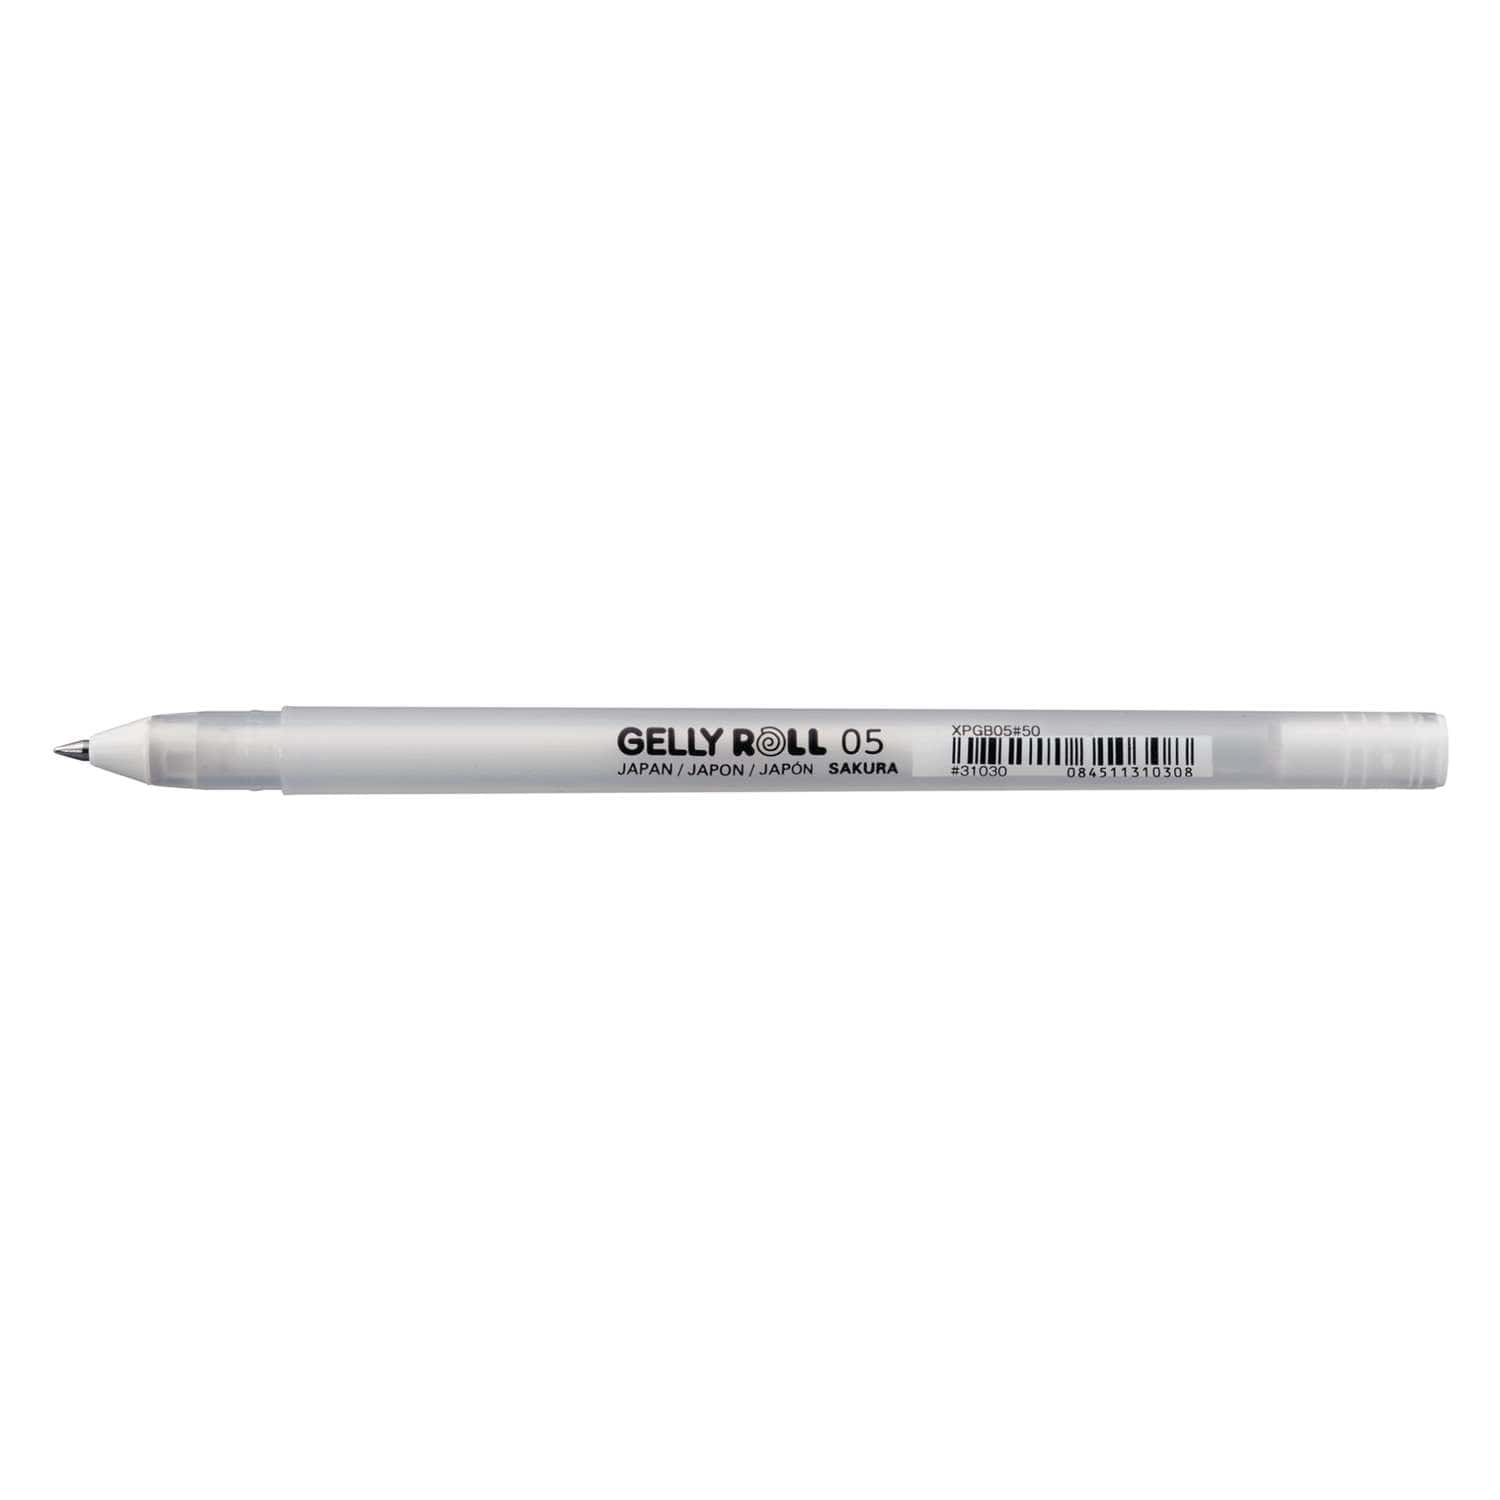 Sakura oro bianco argento Gelly Roll evidenziatore classico penna Gel penne  a inchiostro penna bianca brillante